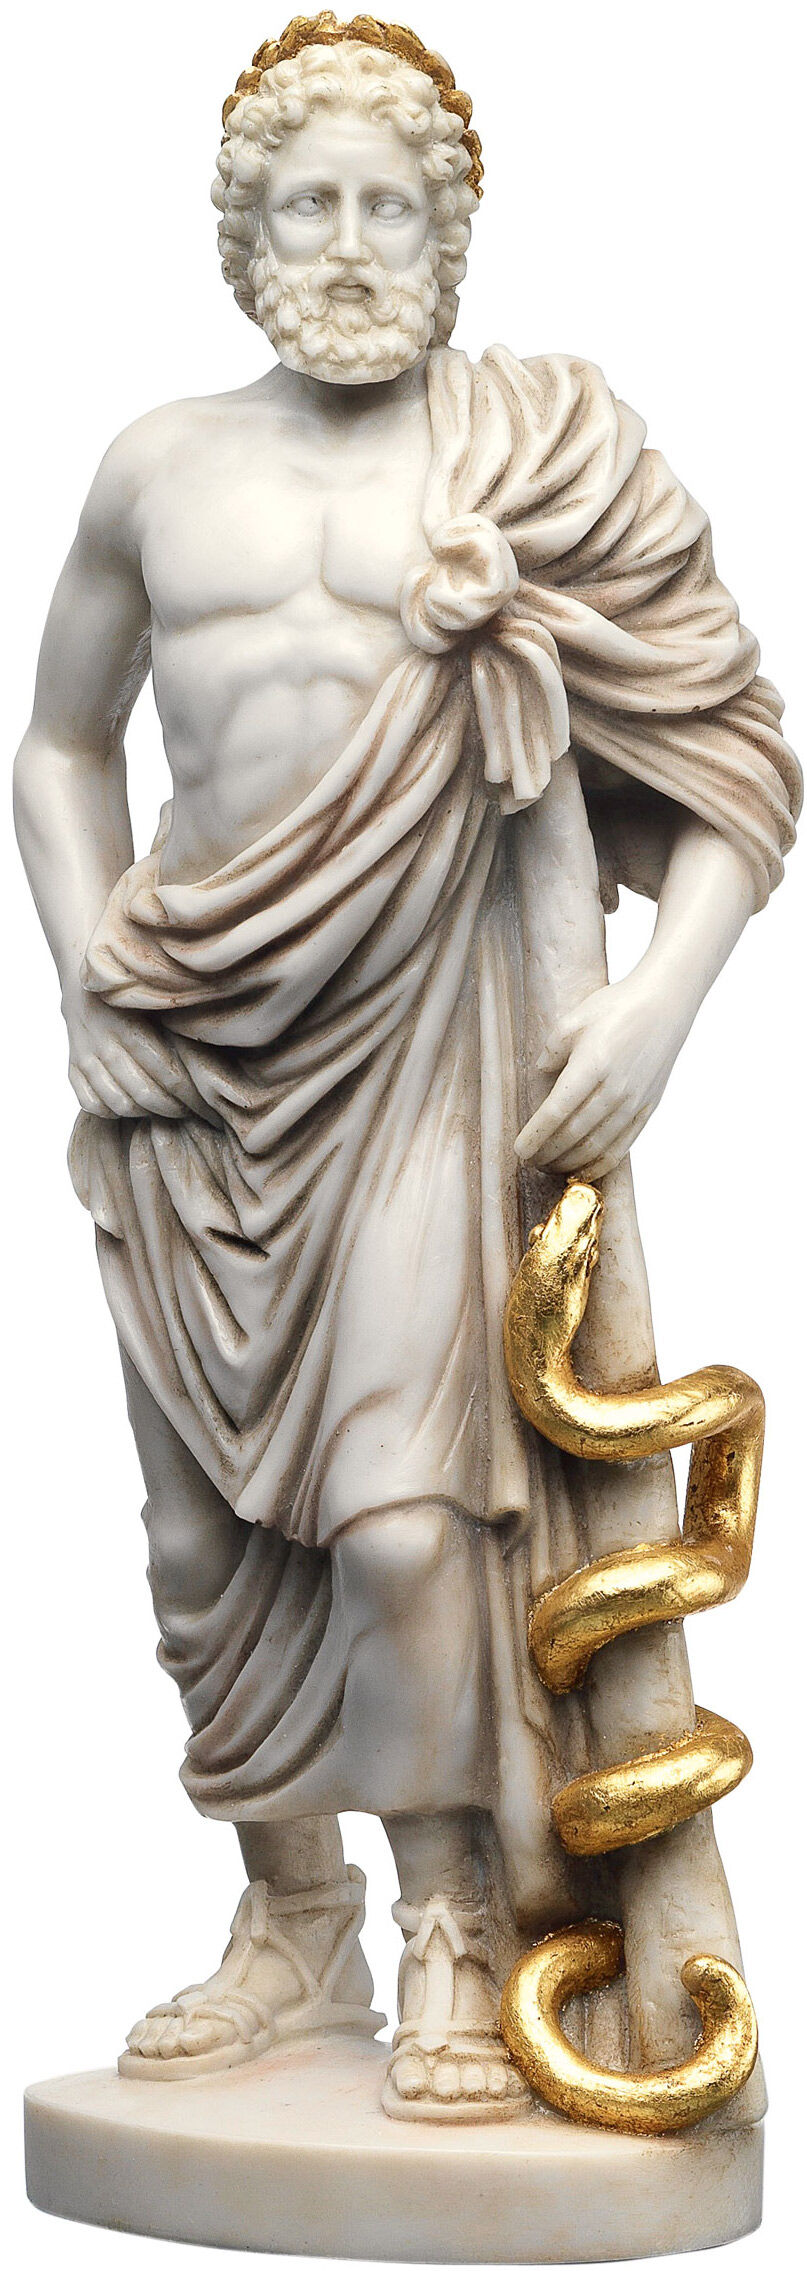 Sculptuur "De godendokter Asclepius", reductie